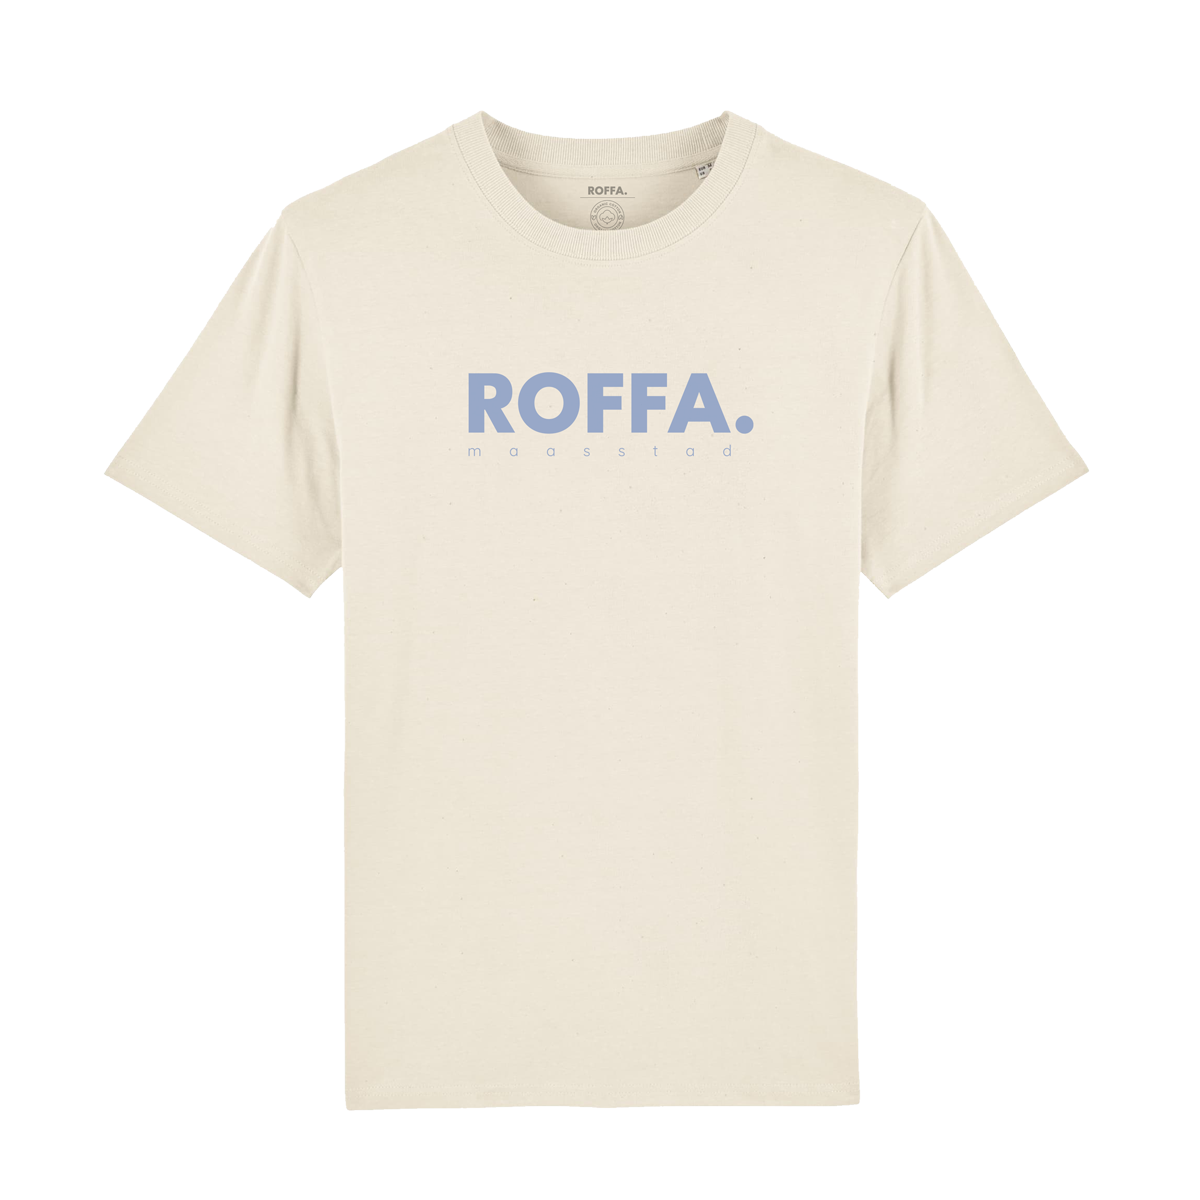 Wit t-shirt met blauw Roffa logo